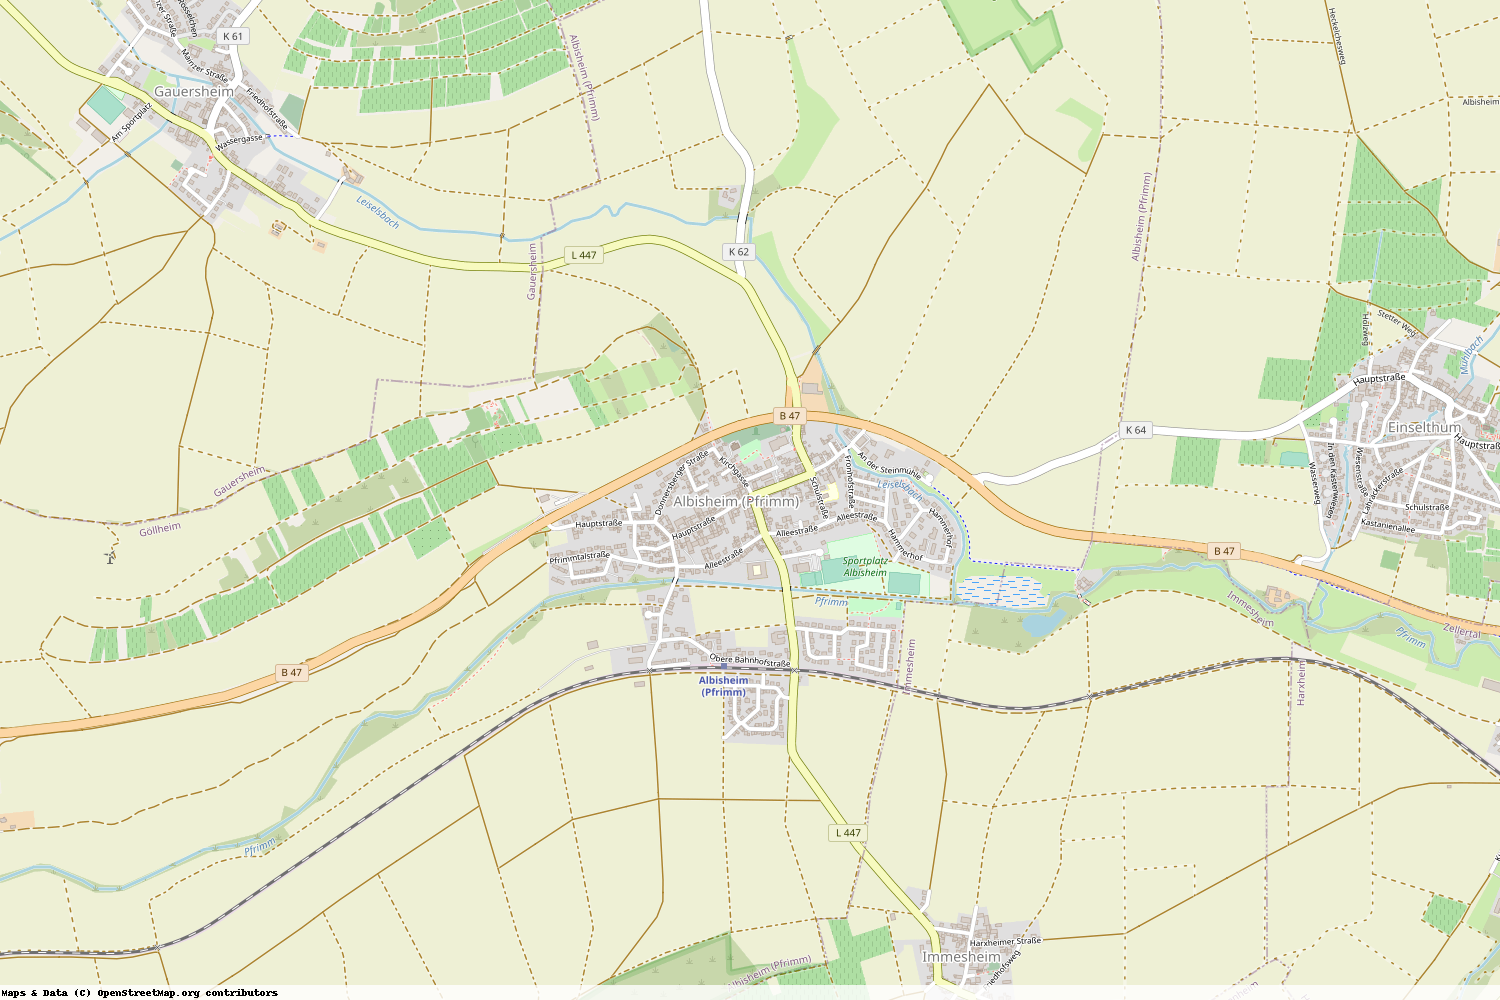 Ist gerade Stromausfall in Rheinland-Pfalz - Donnersbergkreis - Albisheim (Pfrimm)?